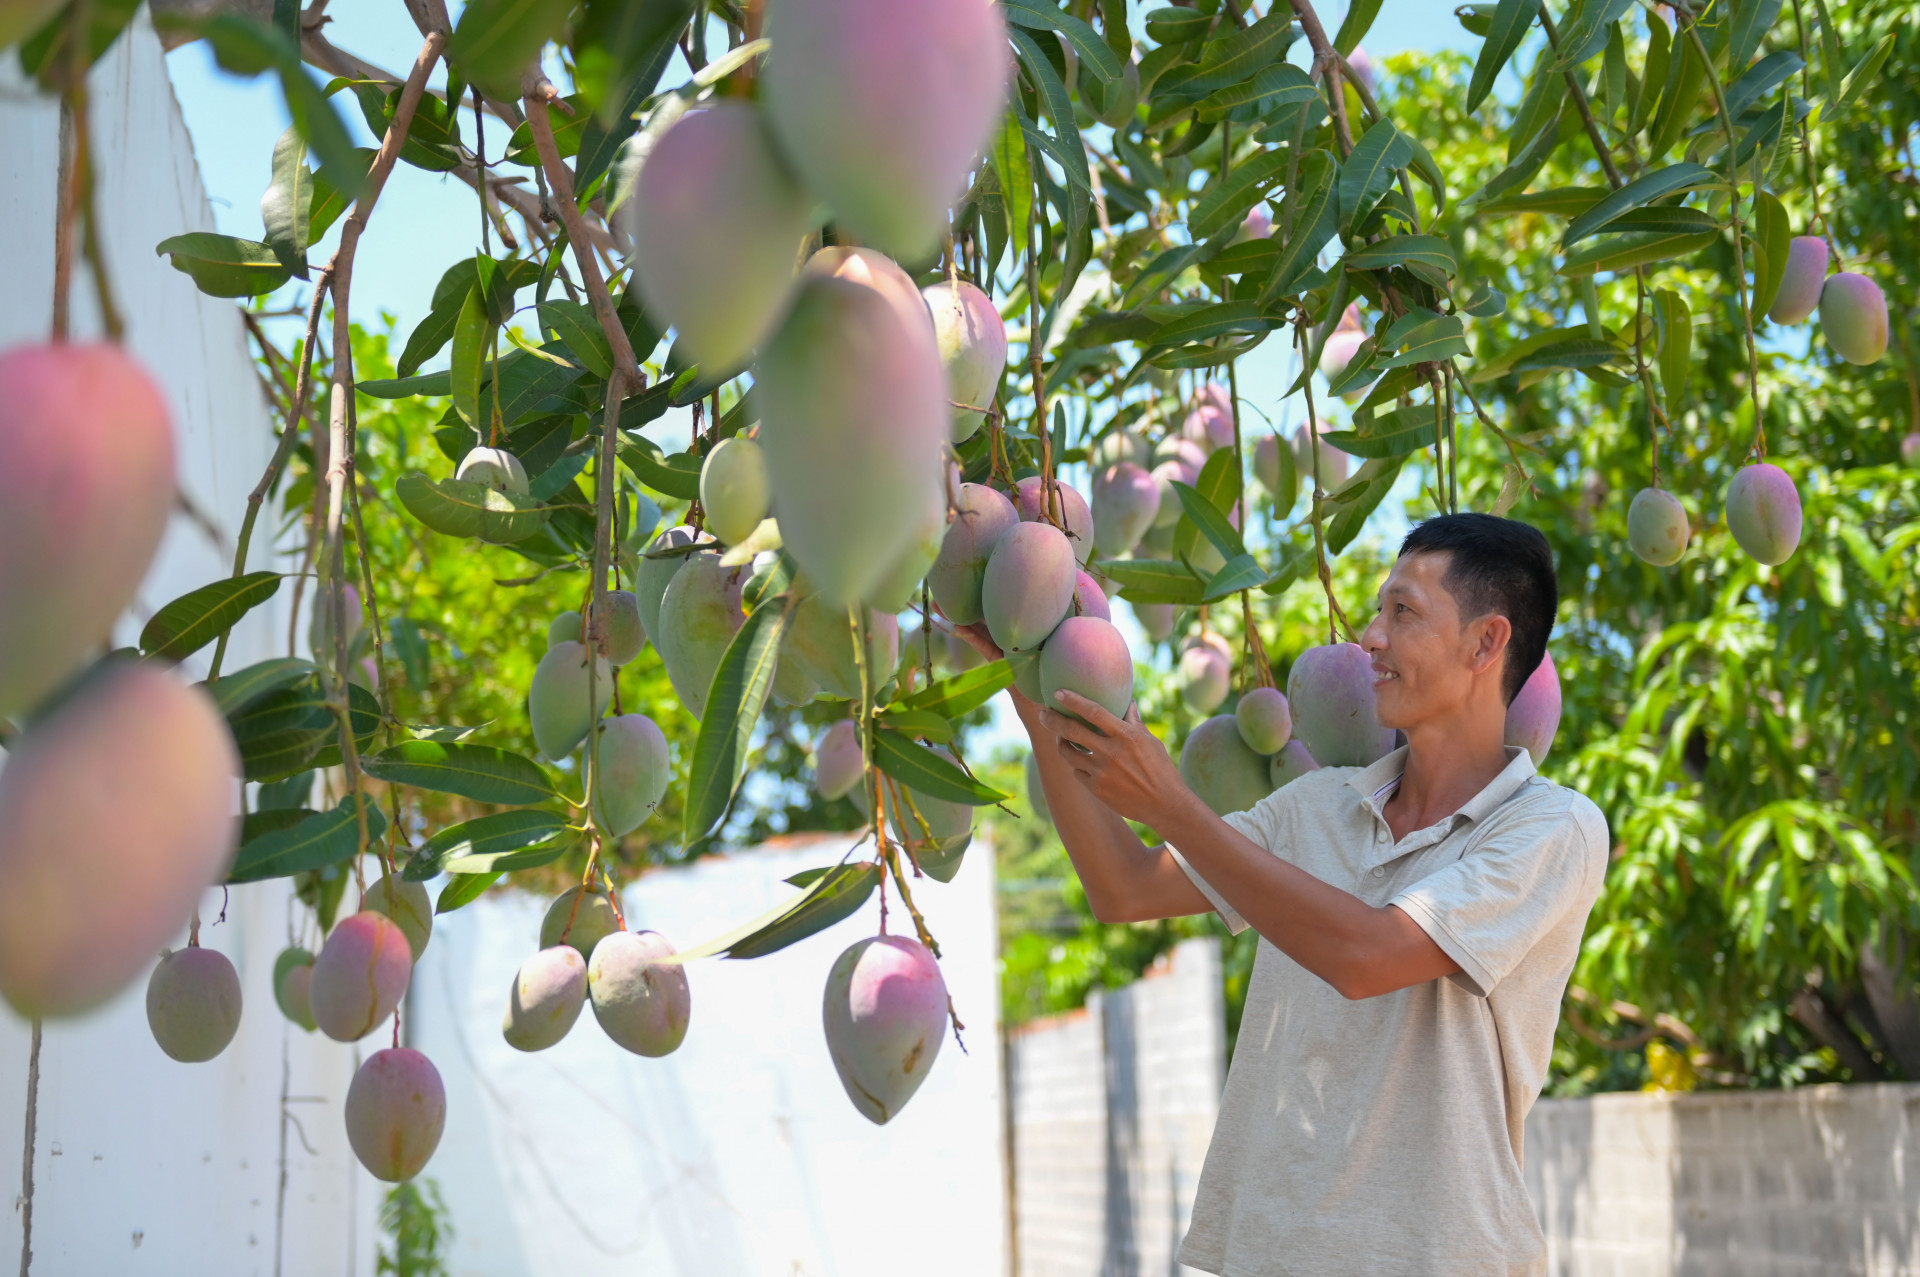 Để quảng bá xoài Cam Lâm, nhiều chủ vườn đã biết để dành những chùm xoài sum suê trái để chụp hình đăng lên mạng xã hội, đưa hình ảnh xoài Cam Lâm vươn xa